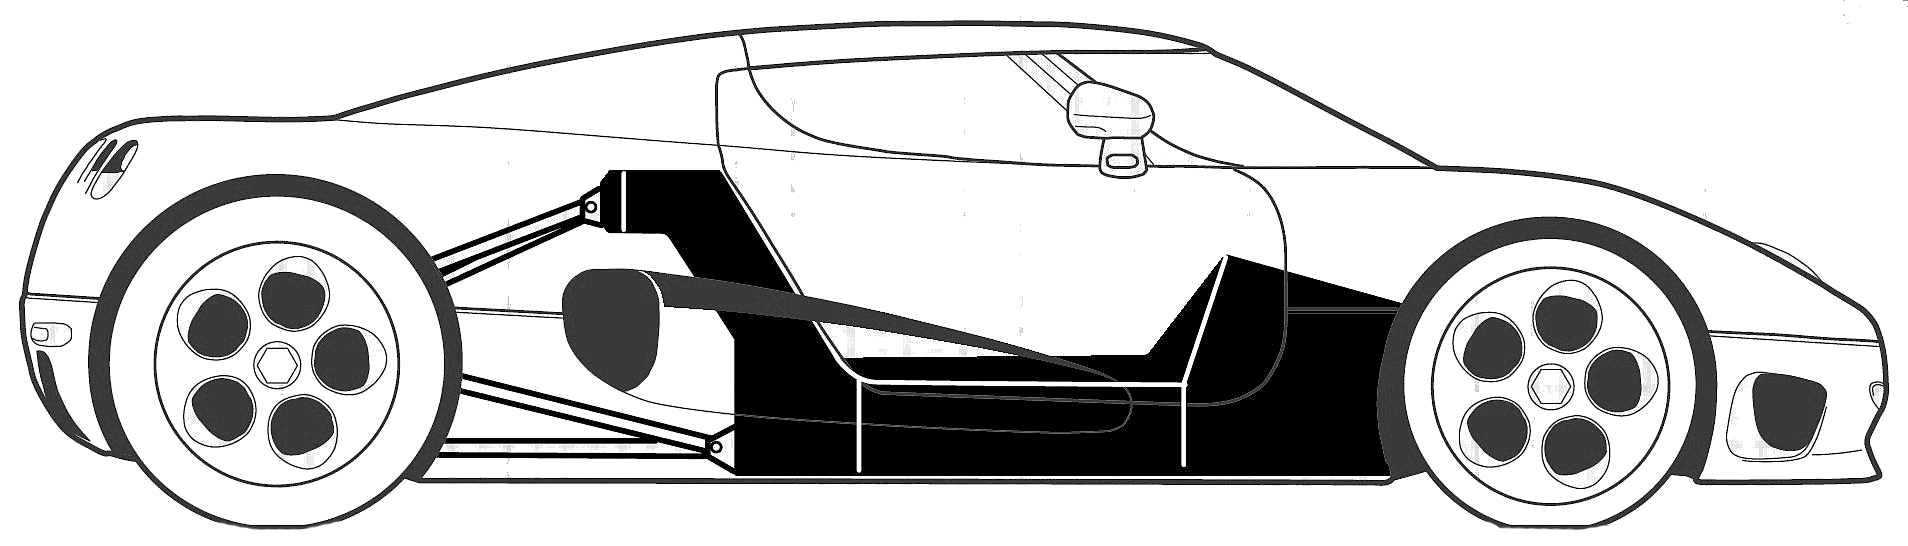 Bil Koenigsegg CC 2004